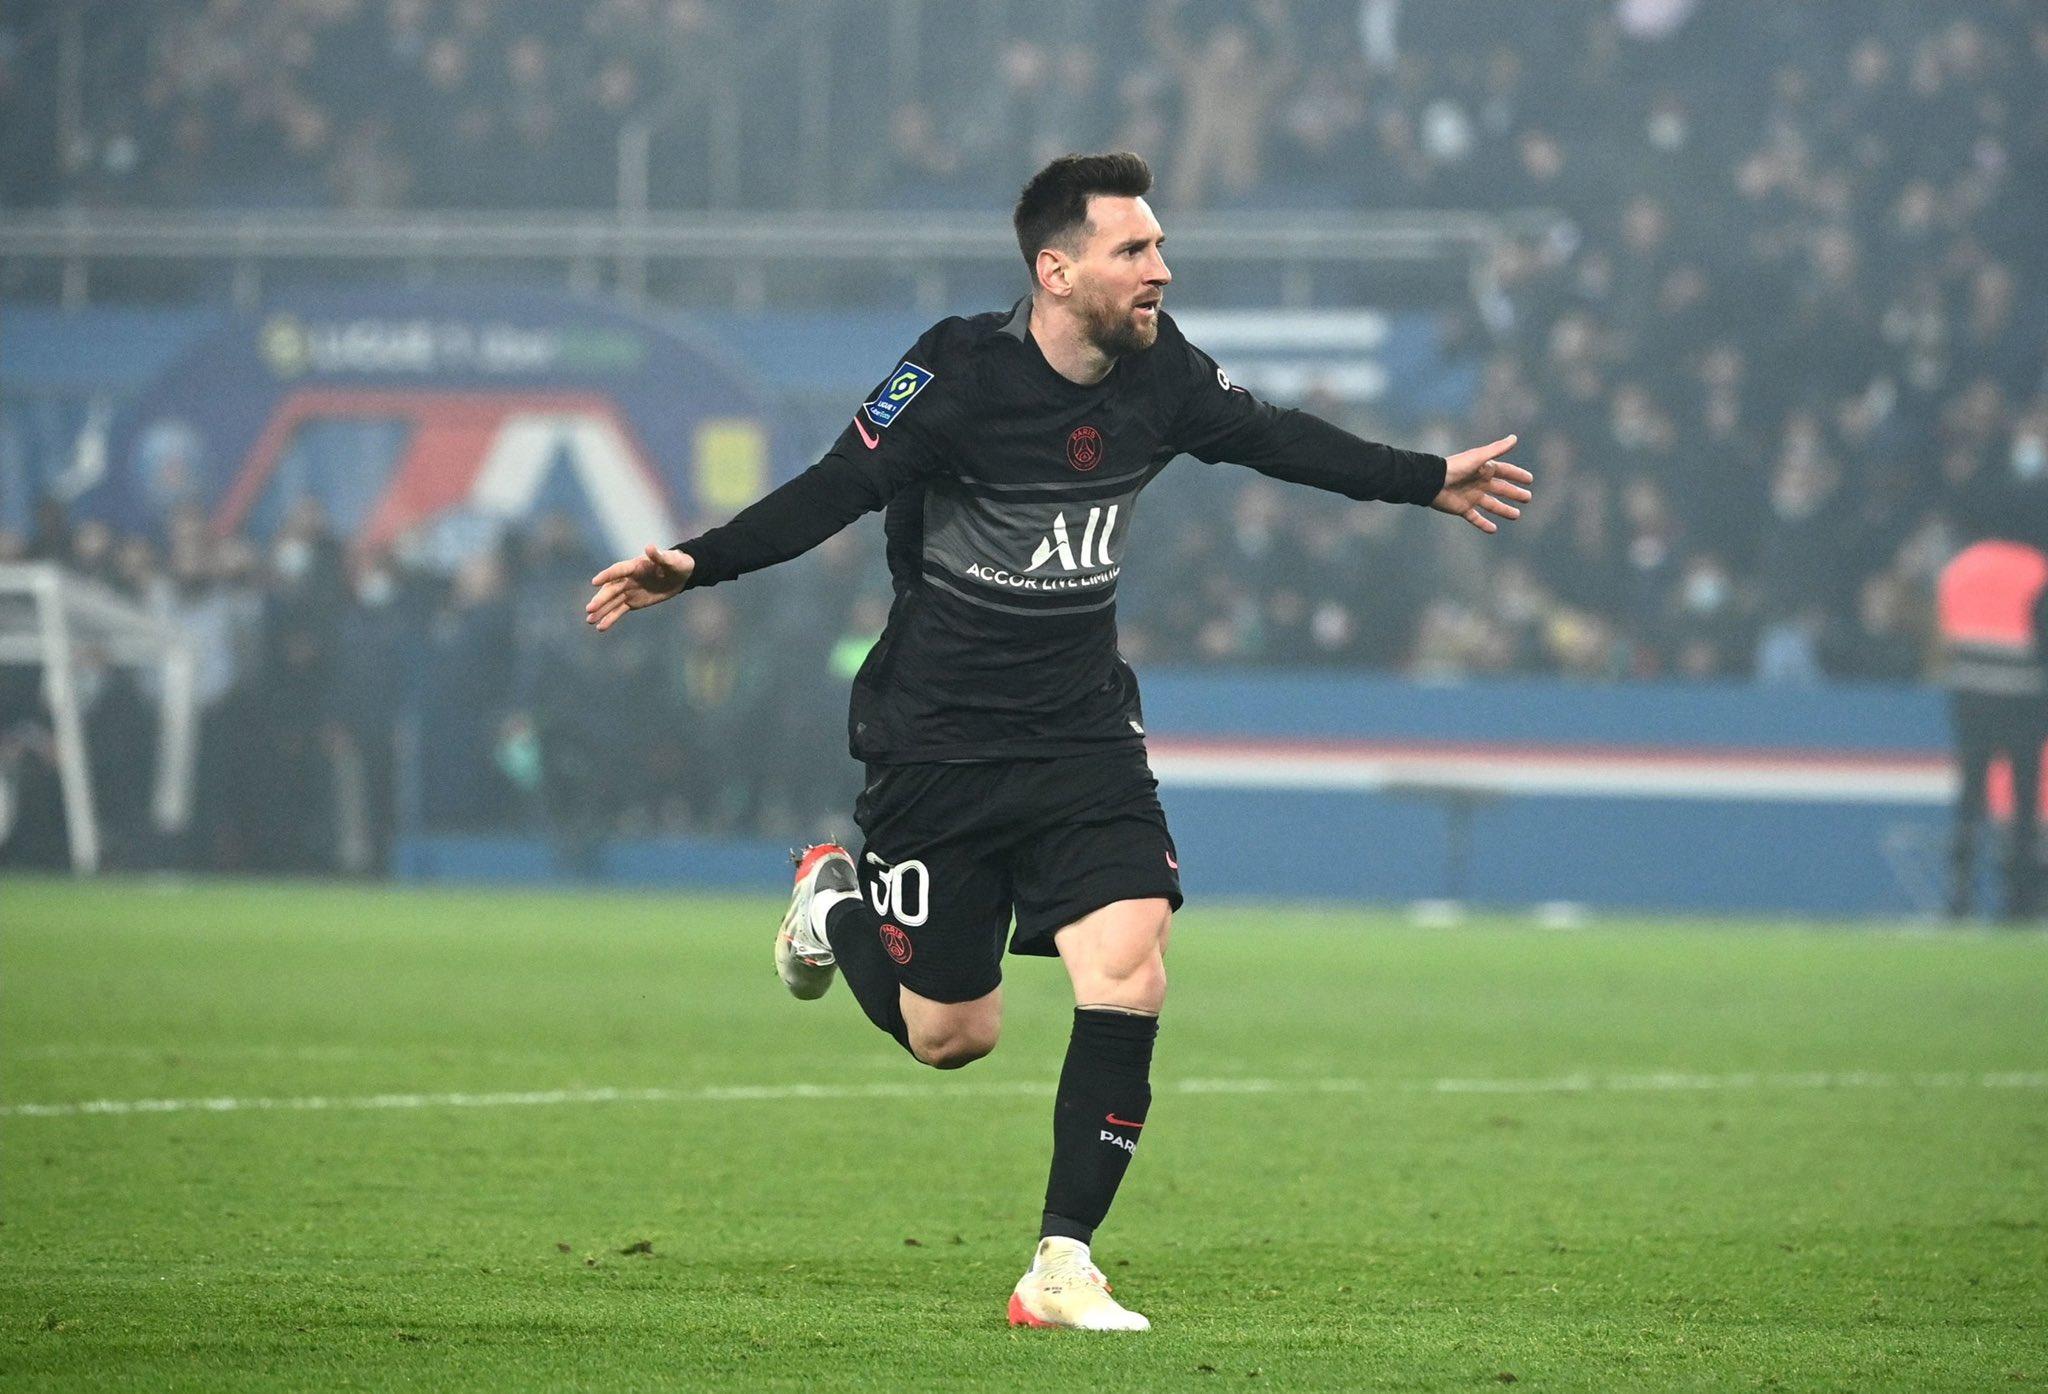 Hãy xem hình ảnh về Messi và Ligue 1 để khám phá sự nghiệp đỉnh cao của siêu sao này trong giải bóng đá hàng đầu của Pháp.